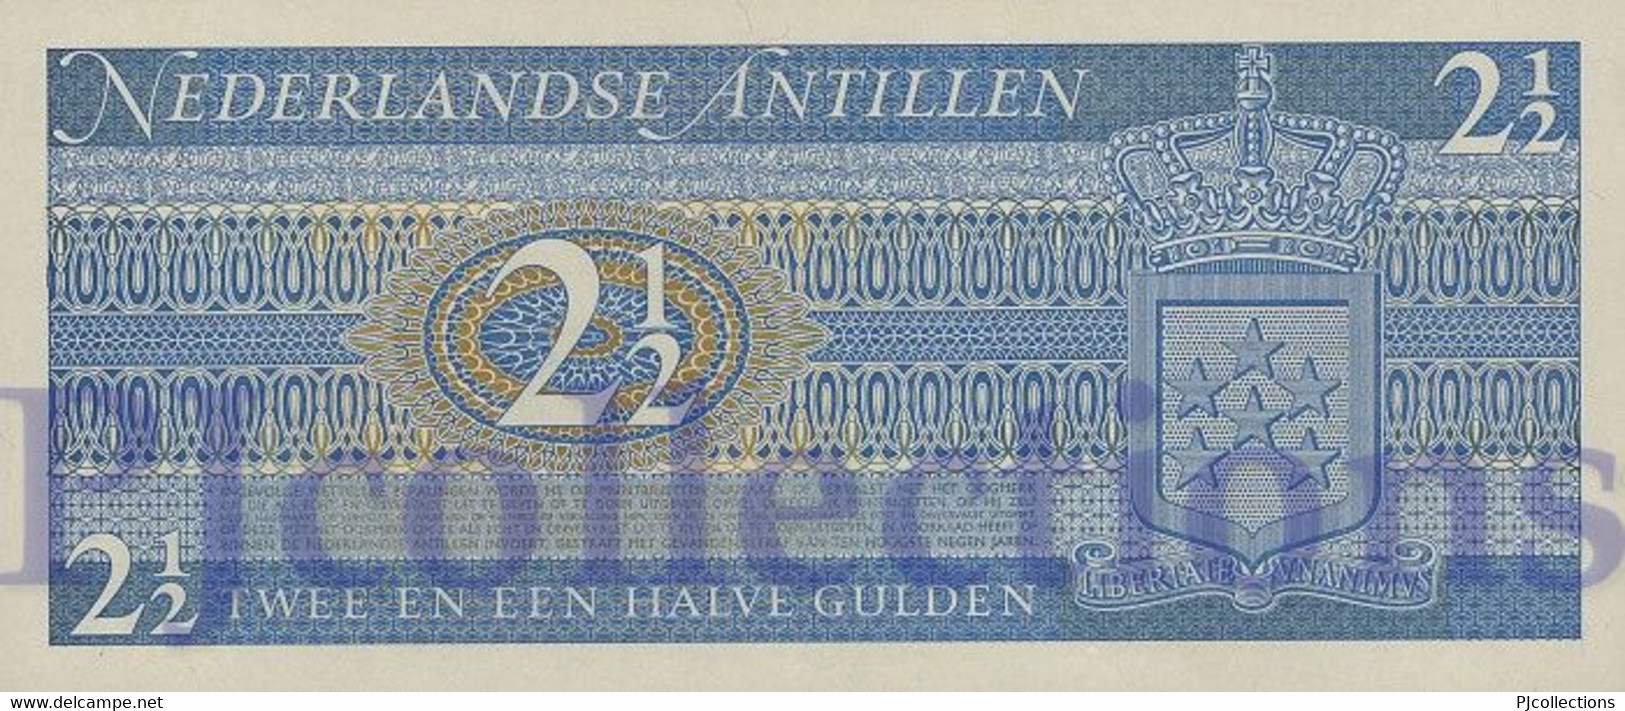 LOT NETHERLANDS ANTILLES 2,5 GULDEN 1970 PICK 21a UNC X 3 PCS - Netherlands Antilles (...-1986)